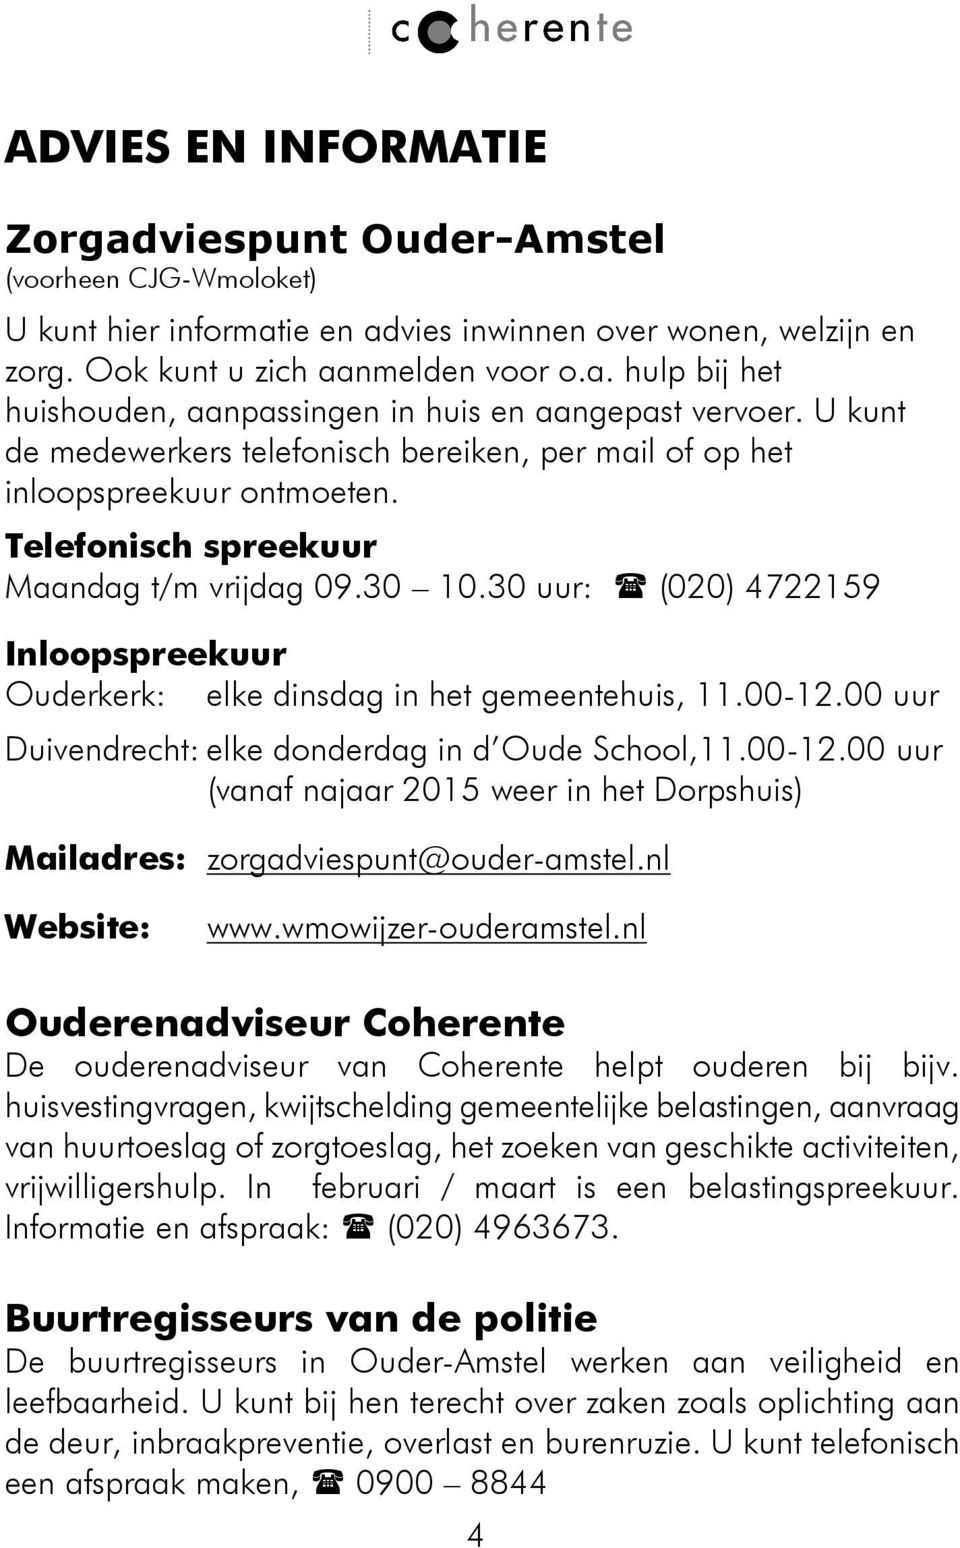 30 uur: (020) 4722159 Inloopspreekuur Ouderkerk: elke dinsdag in het gemeentehuis, 11.00-12.00 uur Duivendrecht: elke donderdag in d Oude School,11.00-12.00 uur (vanaf najaar 2015 weer in het Dorpshuis) Mailadres: zorgadviespunt@ouder-amstel.